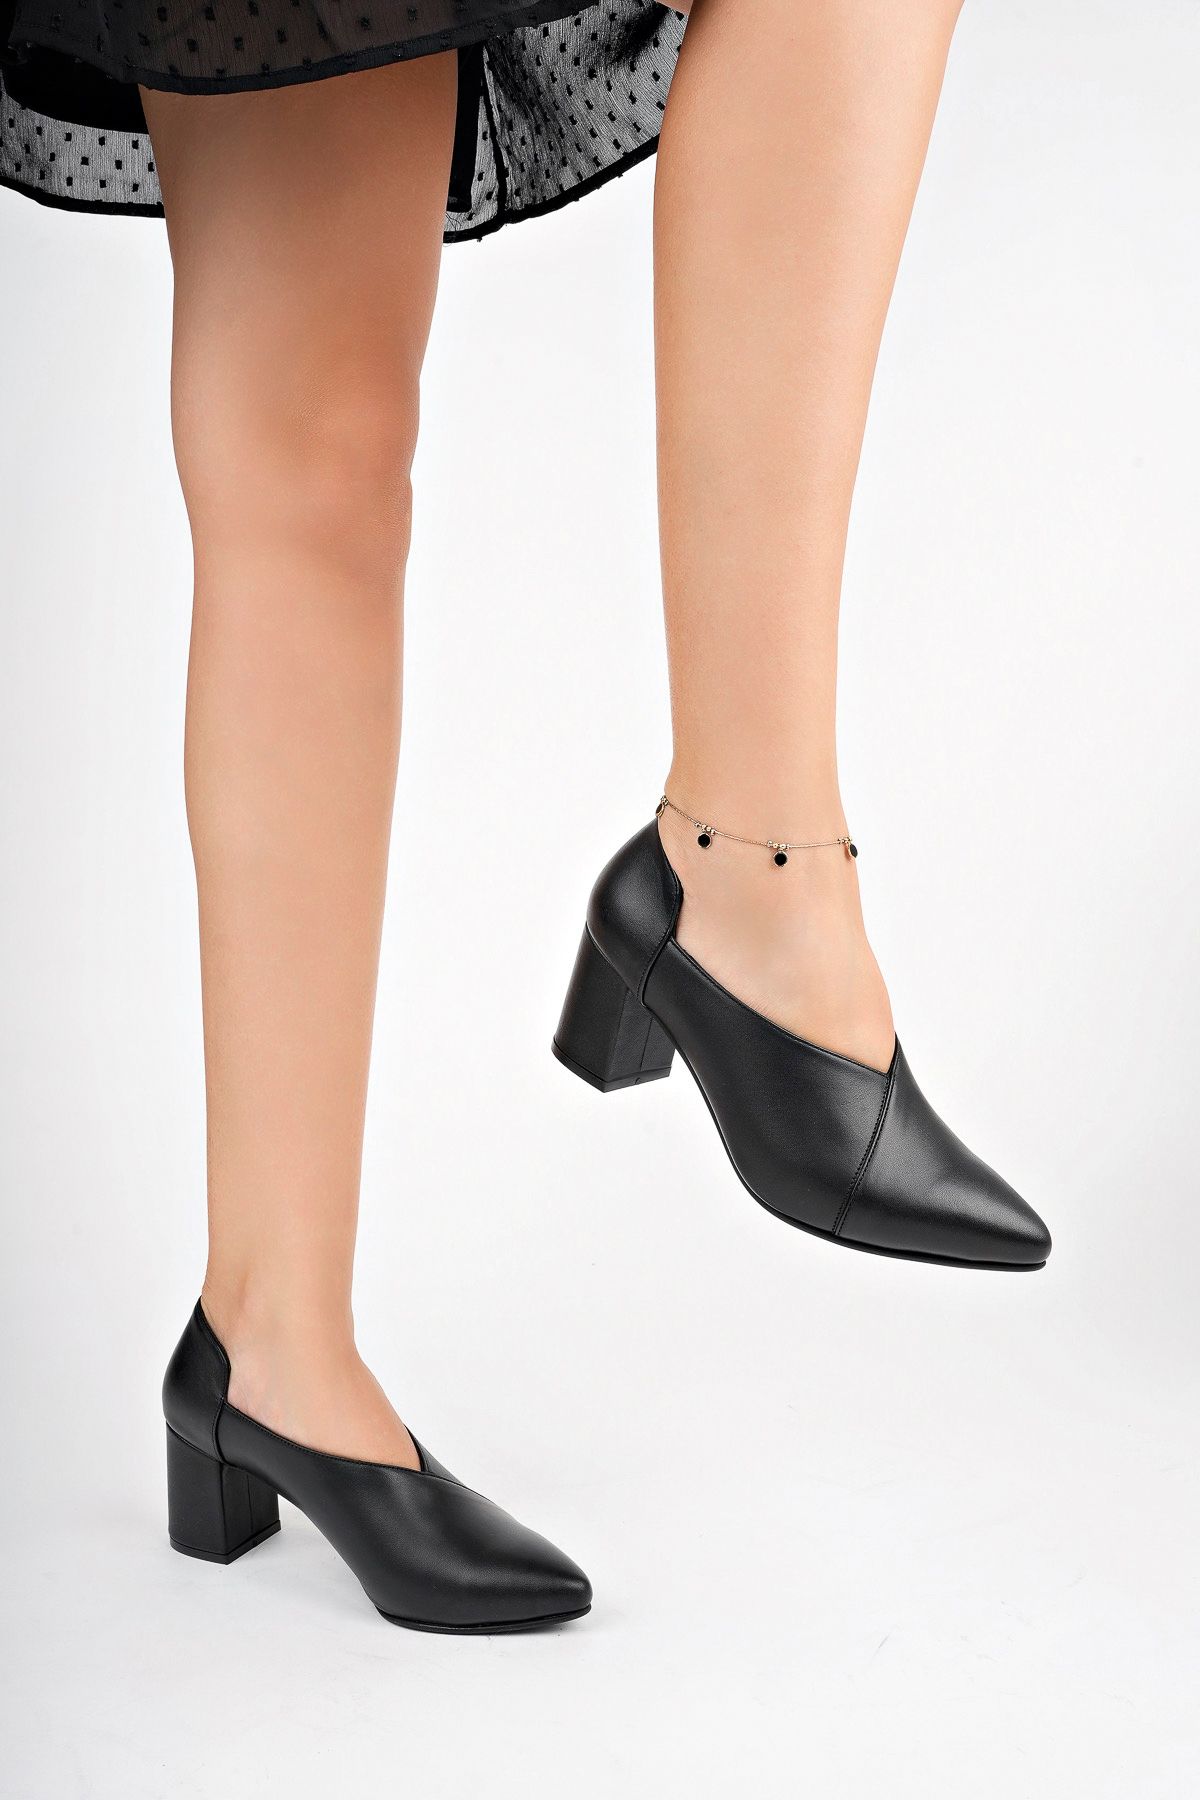 Deripabuc Hakiki Deri Siyah Kadın Topuklu Deri Ayakkabı Shn-0865